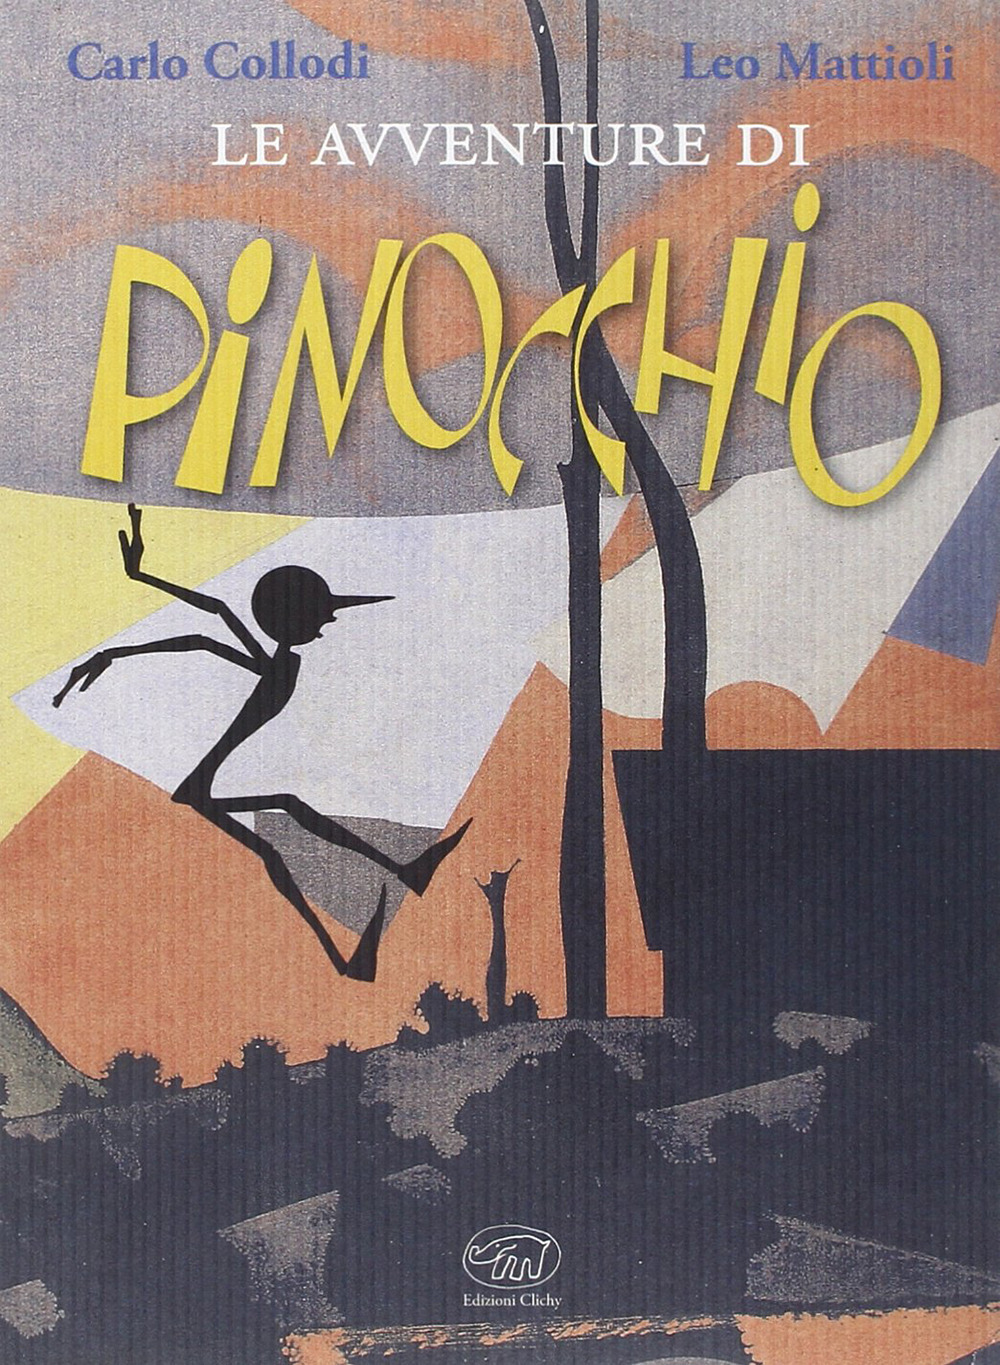 Le avventure di Pinocchio. Ediz. illustrata